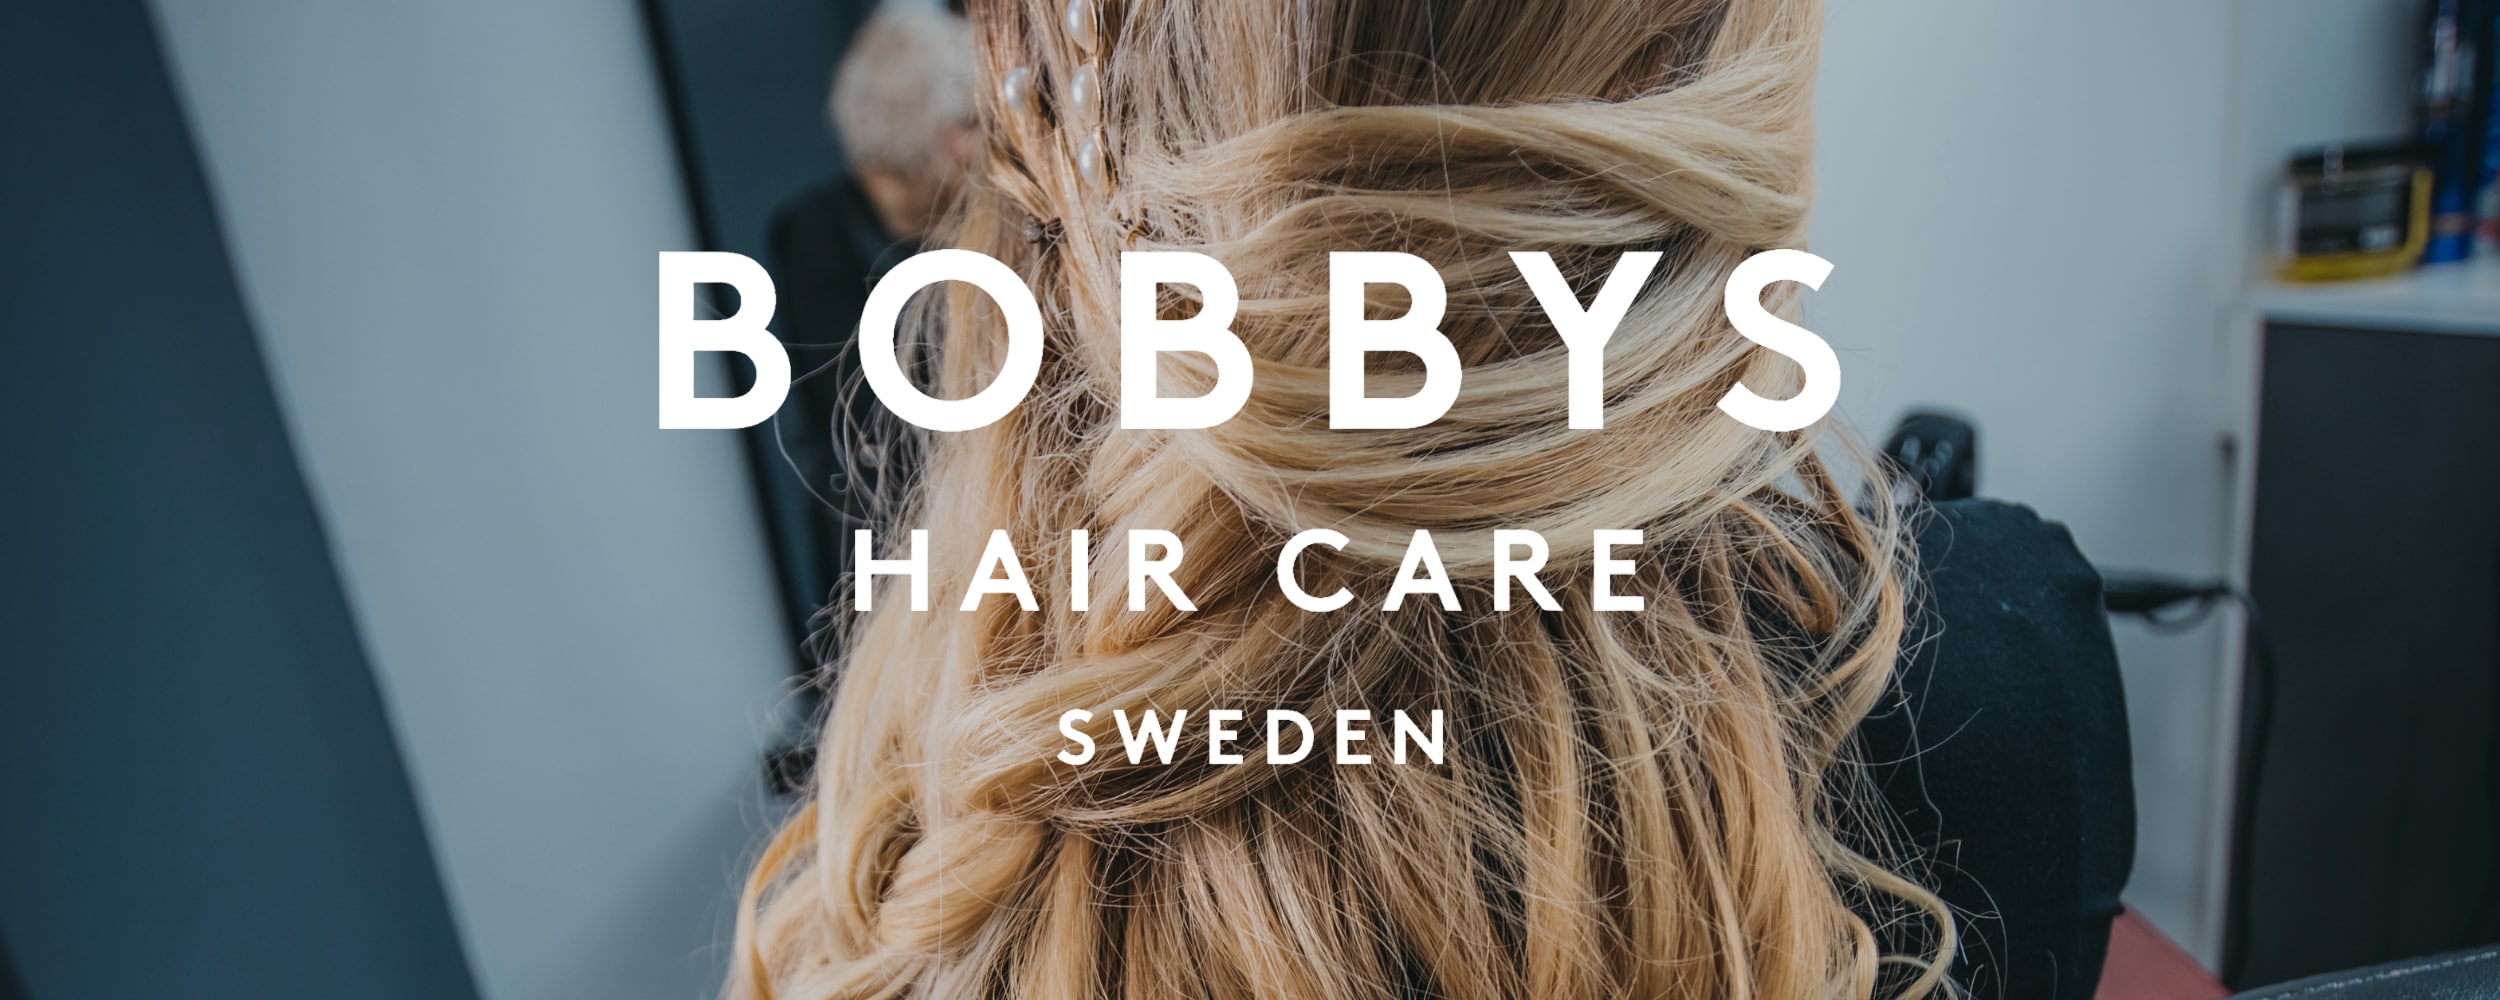 Bobbys Hair Care